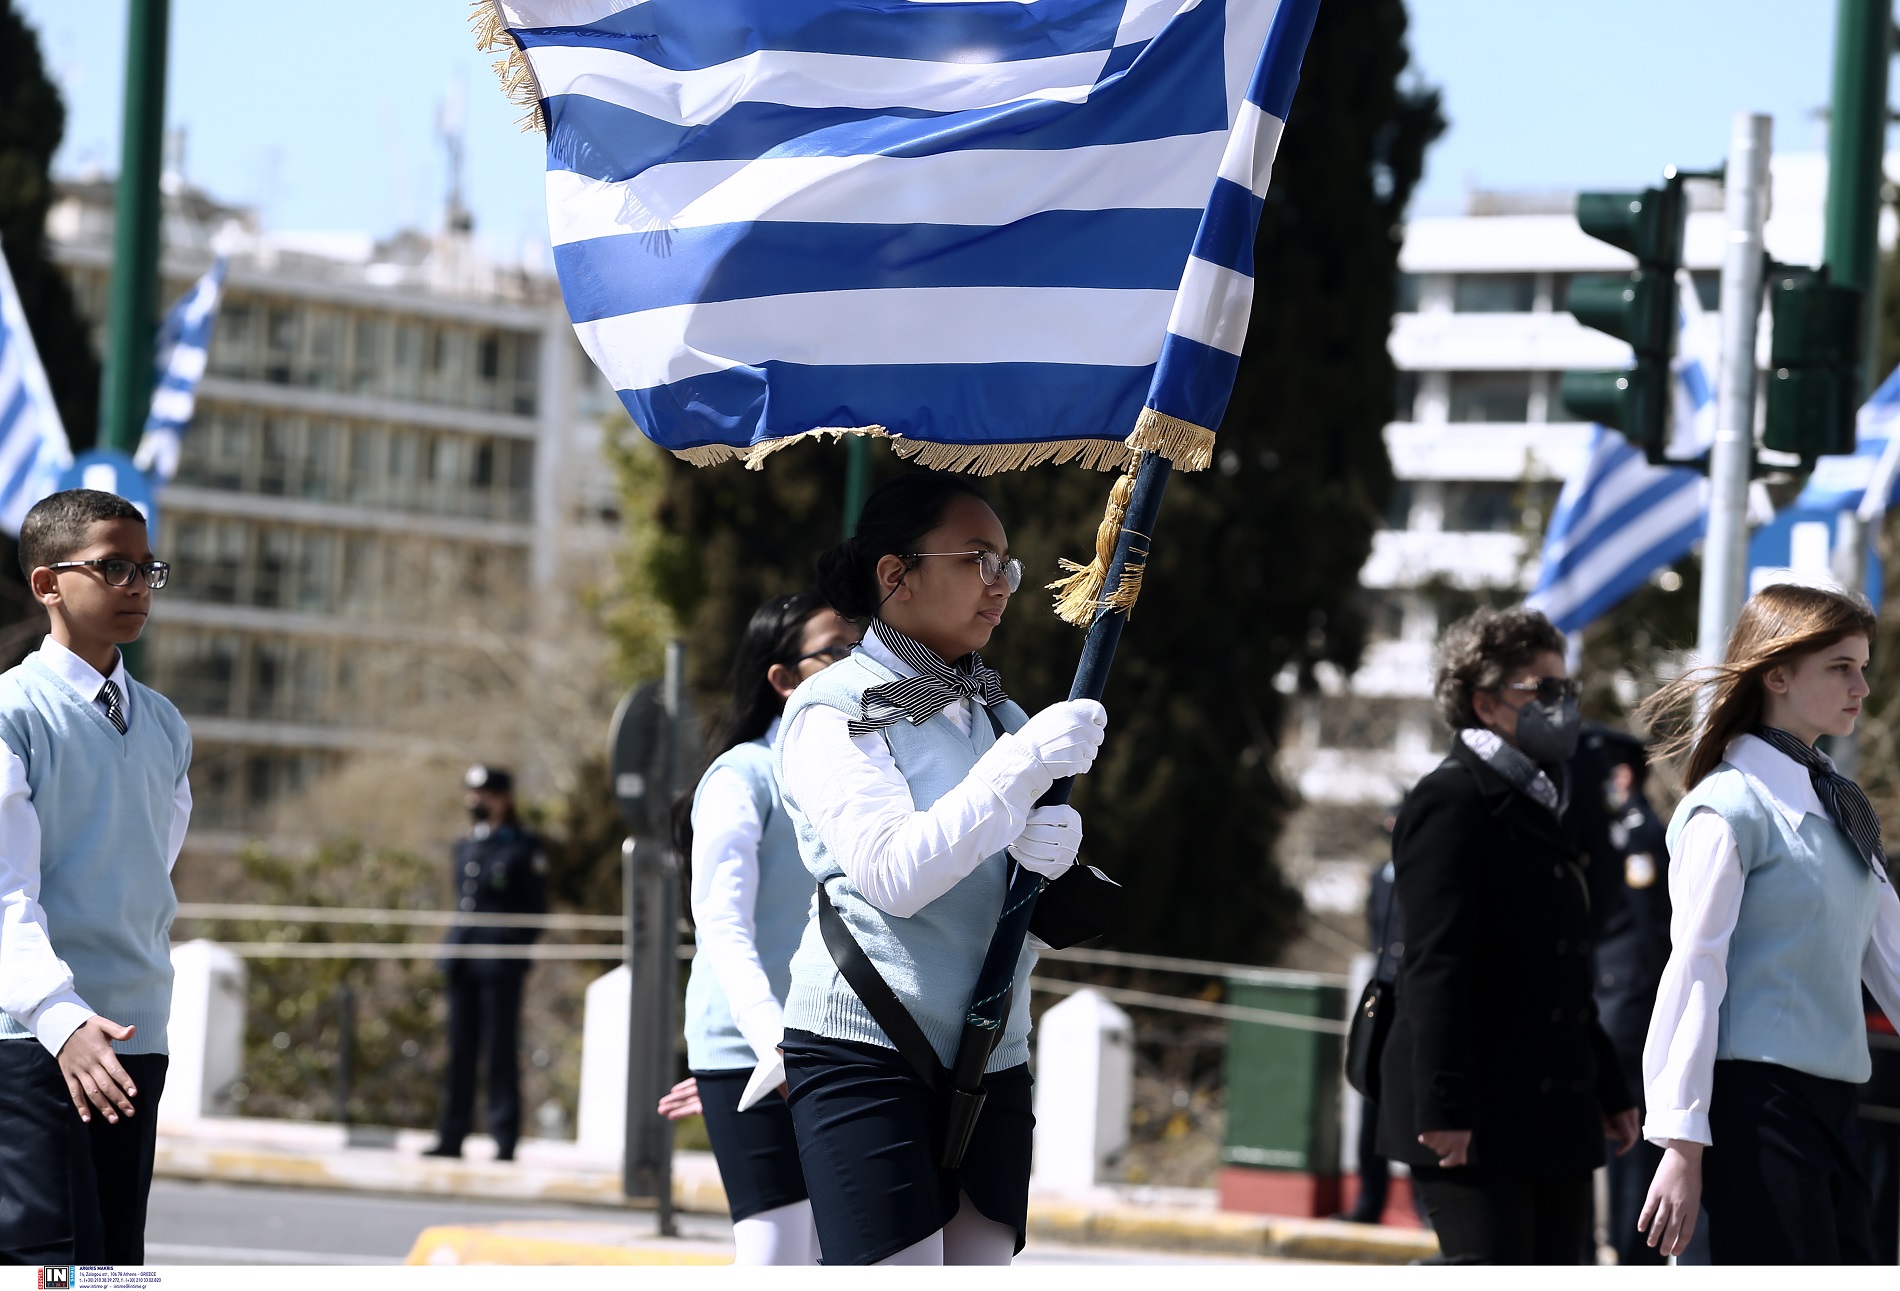 Μαθητική παρέλαση στην Αθήνα